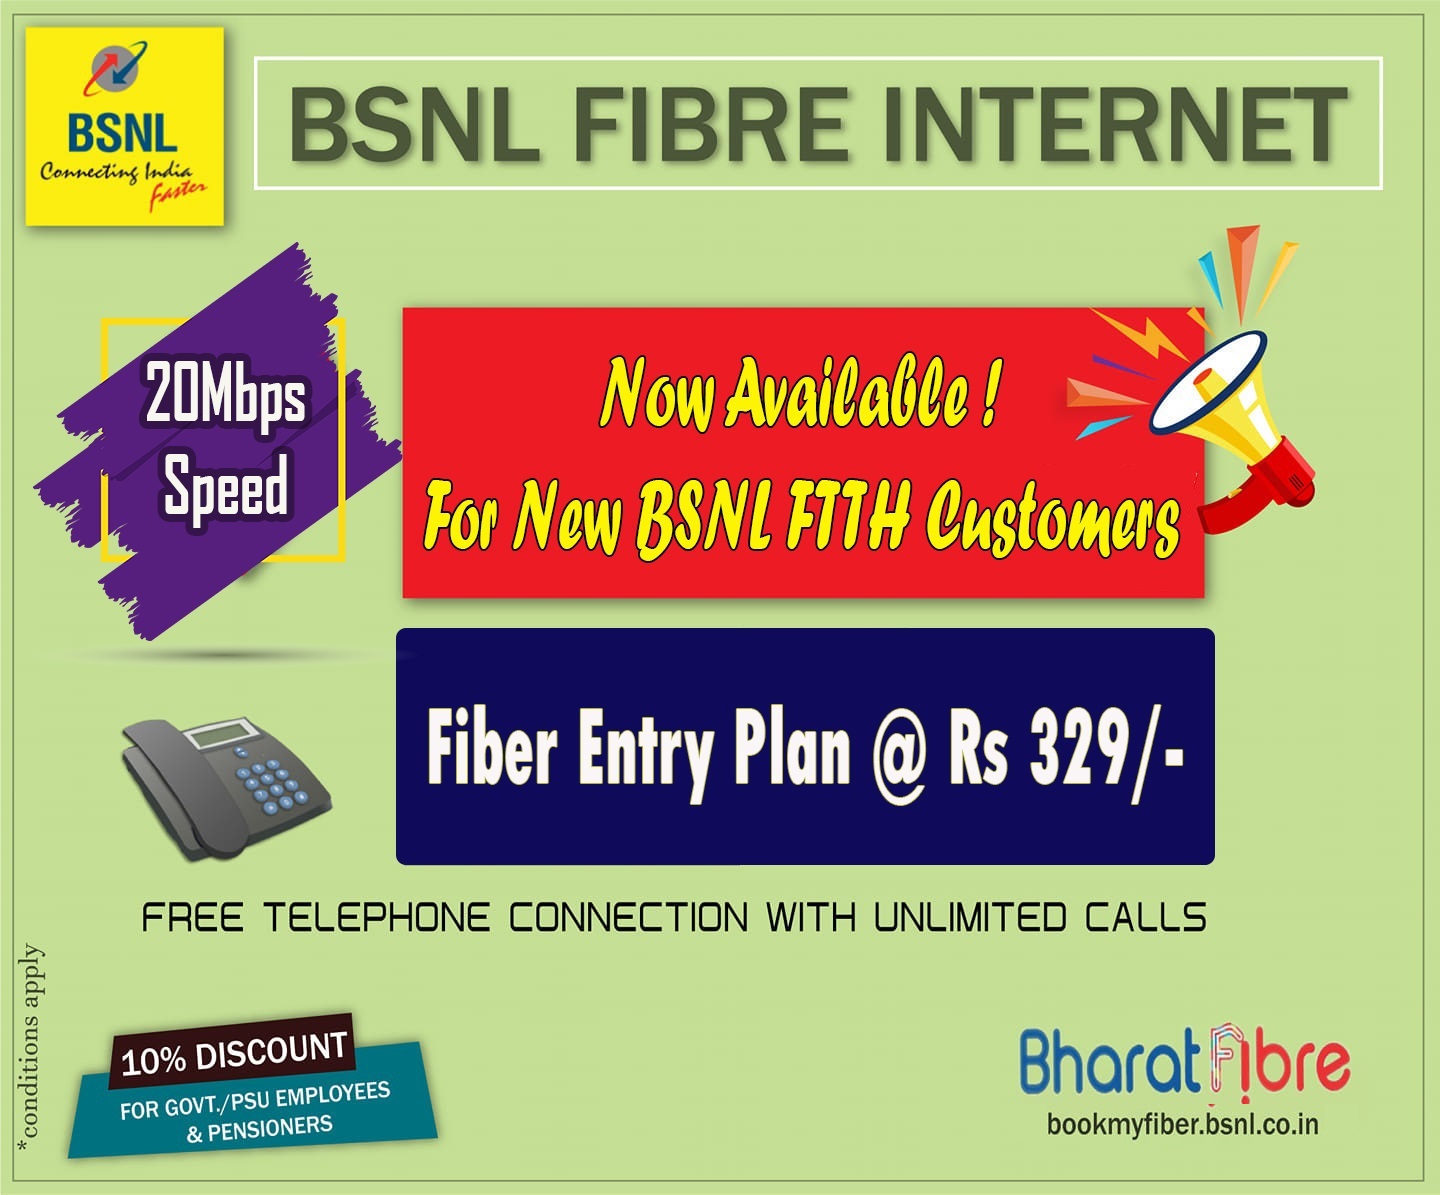 bsnl enterprise broadband plans